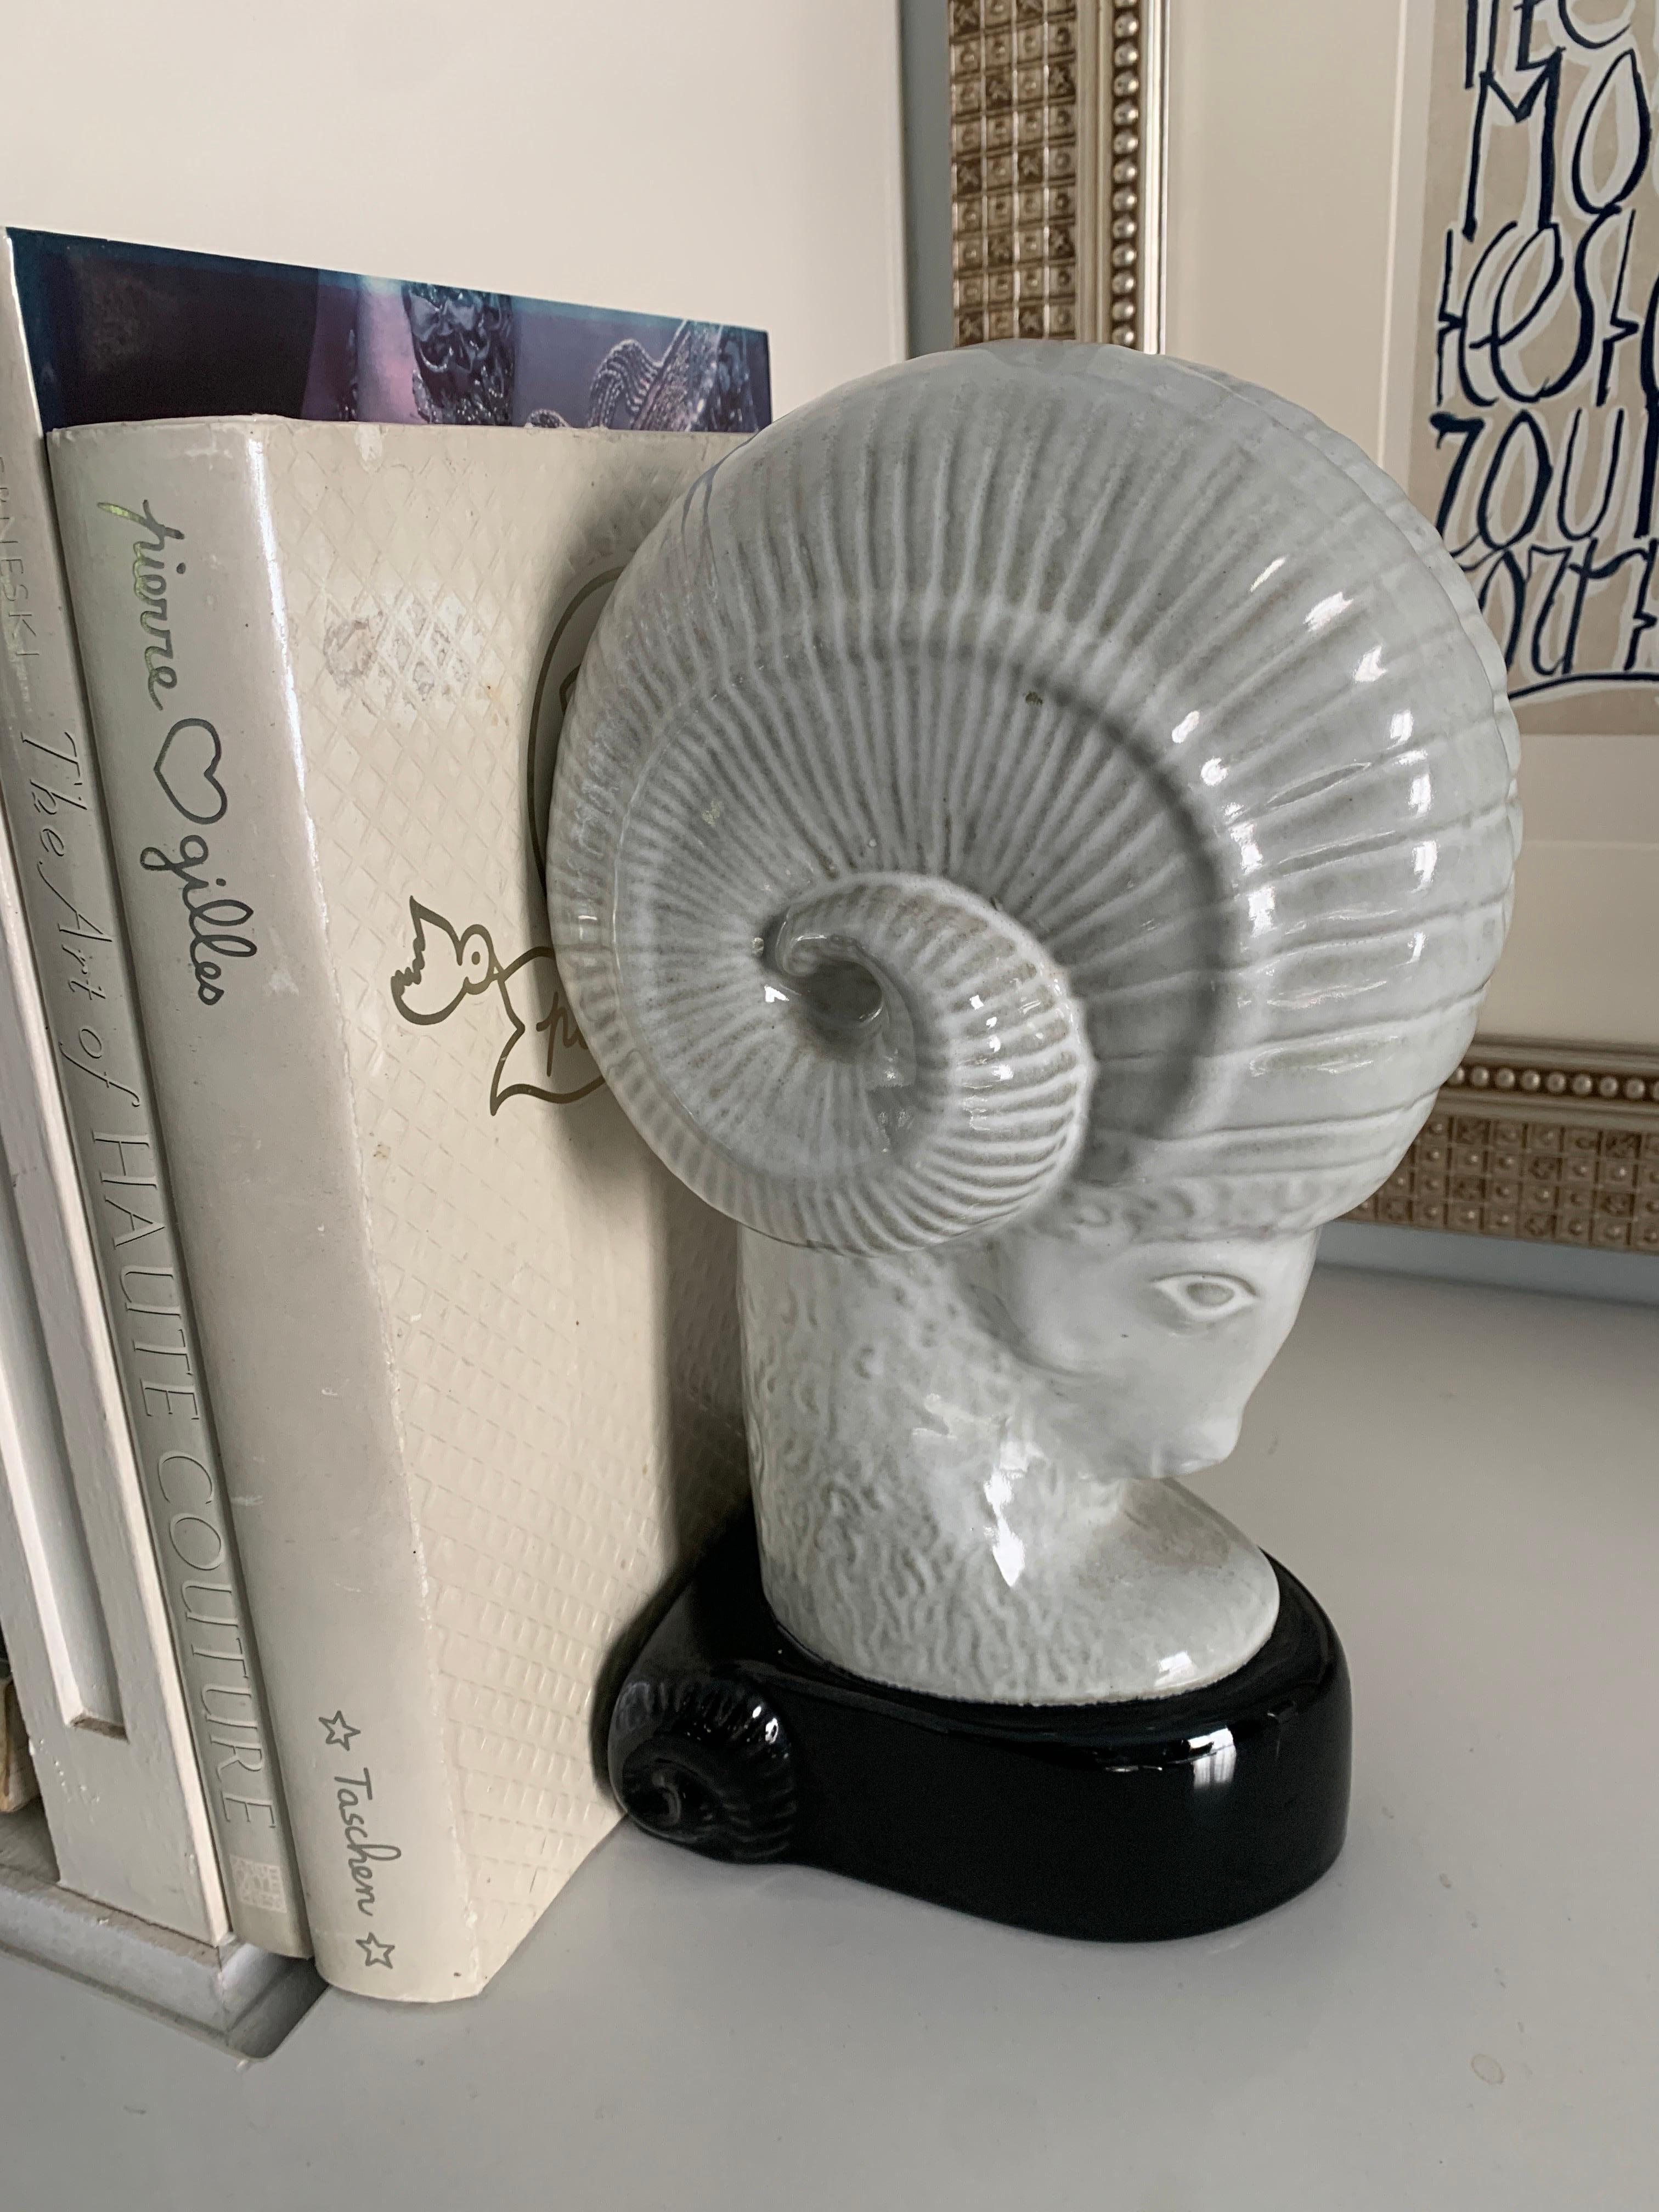 Une très belle et grande sculpture d'une tête de bélier - parfaitement adaptée comme serre-livre pour les grands livres, ou comme pièce décorative autonome. Pas d'éclats ni de fissures.